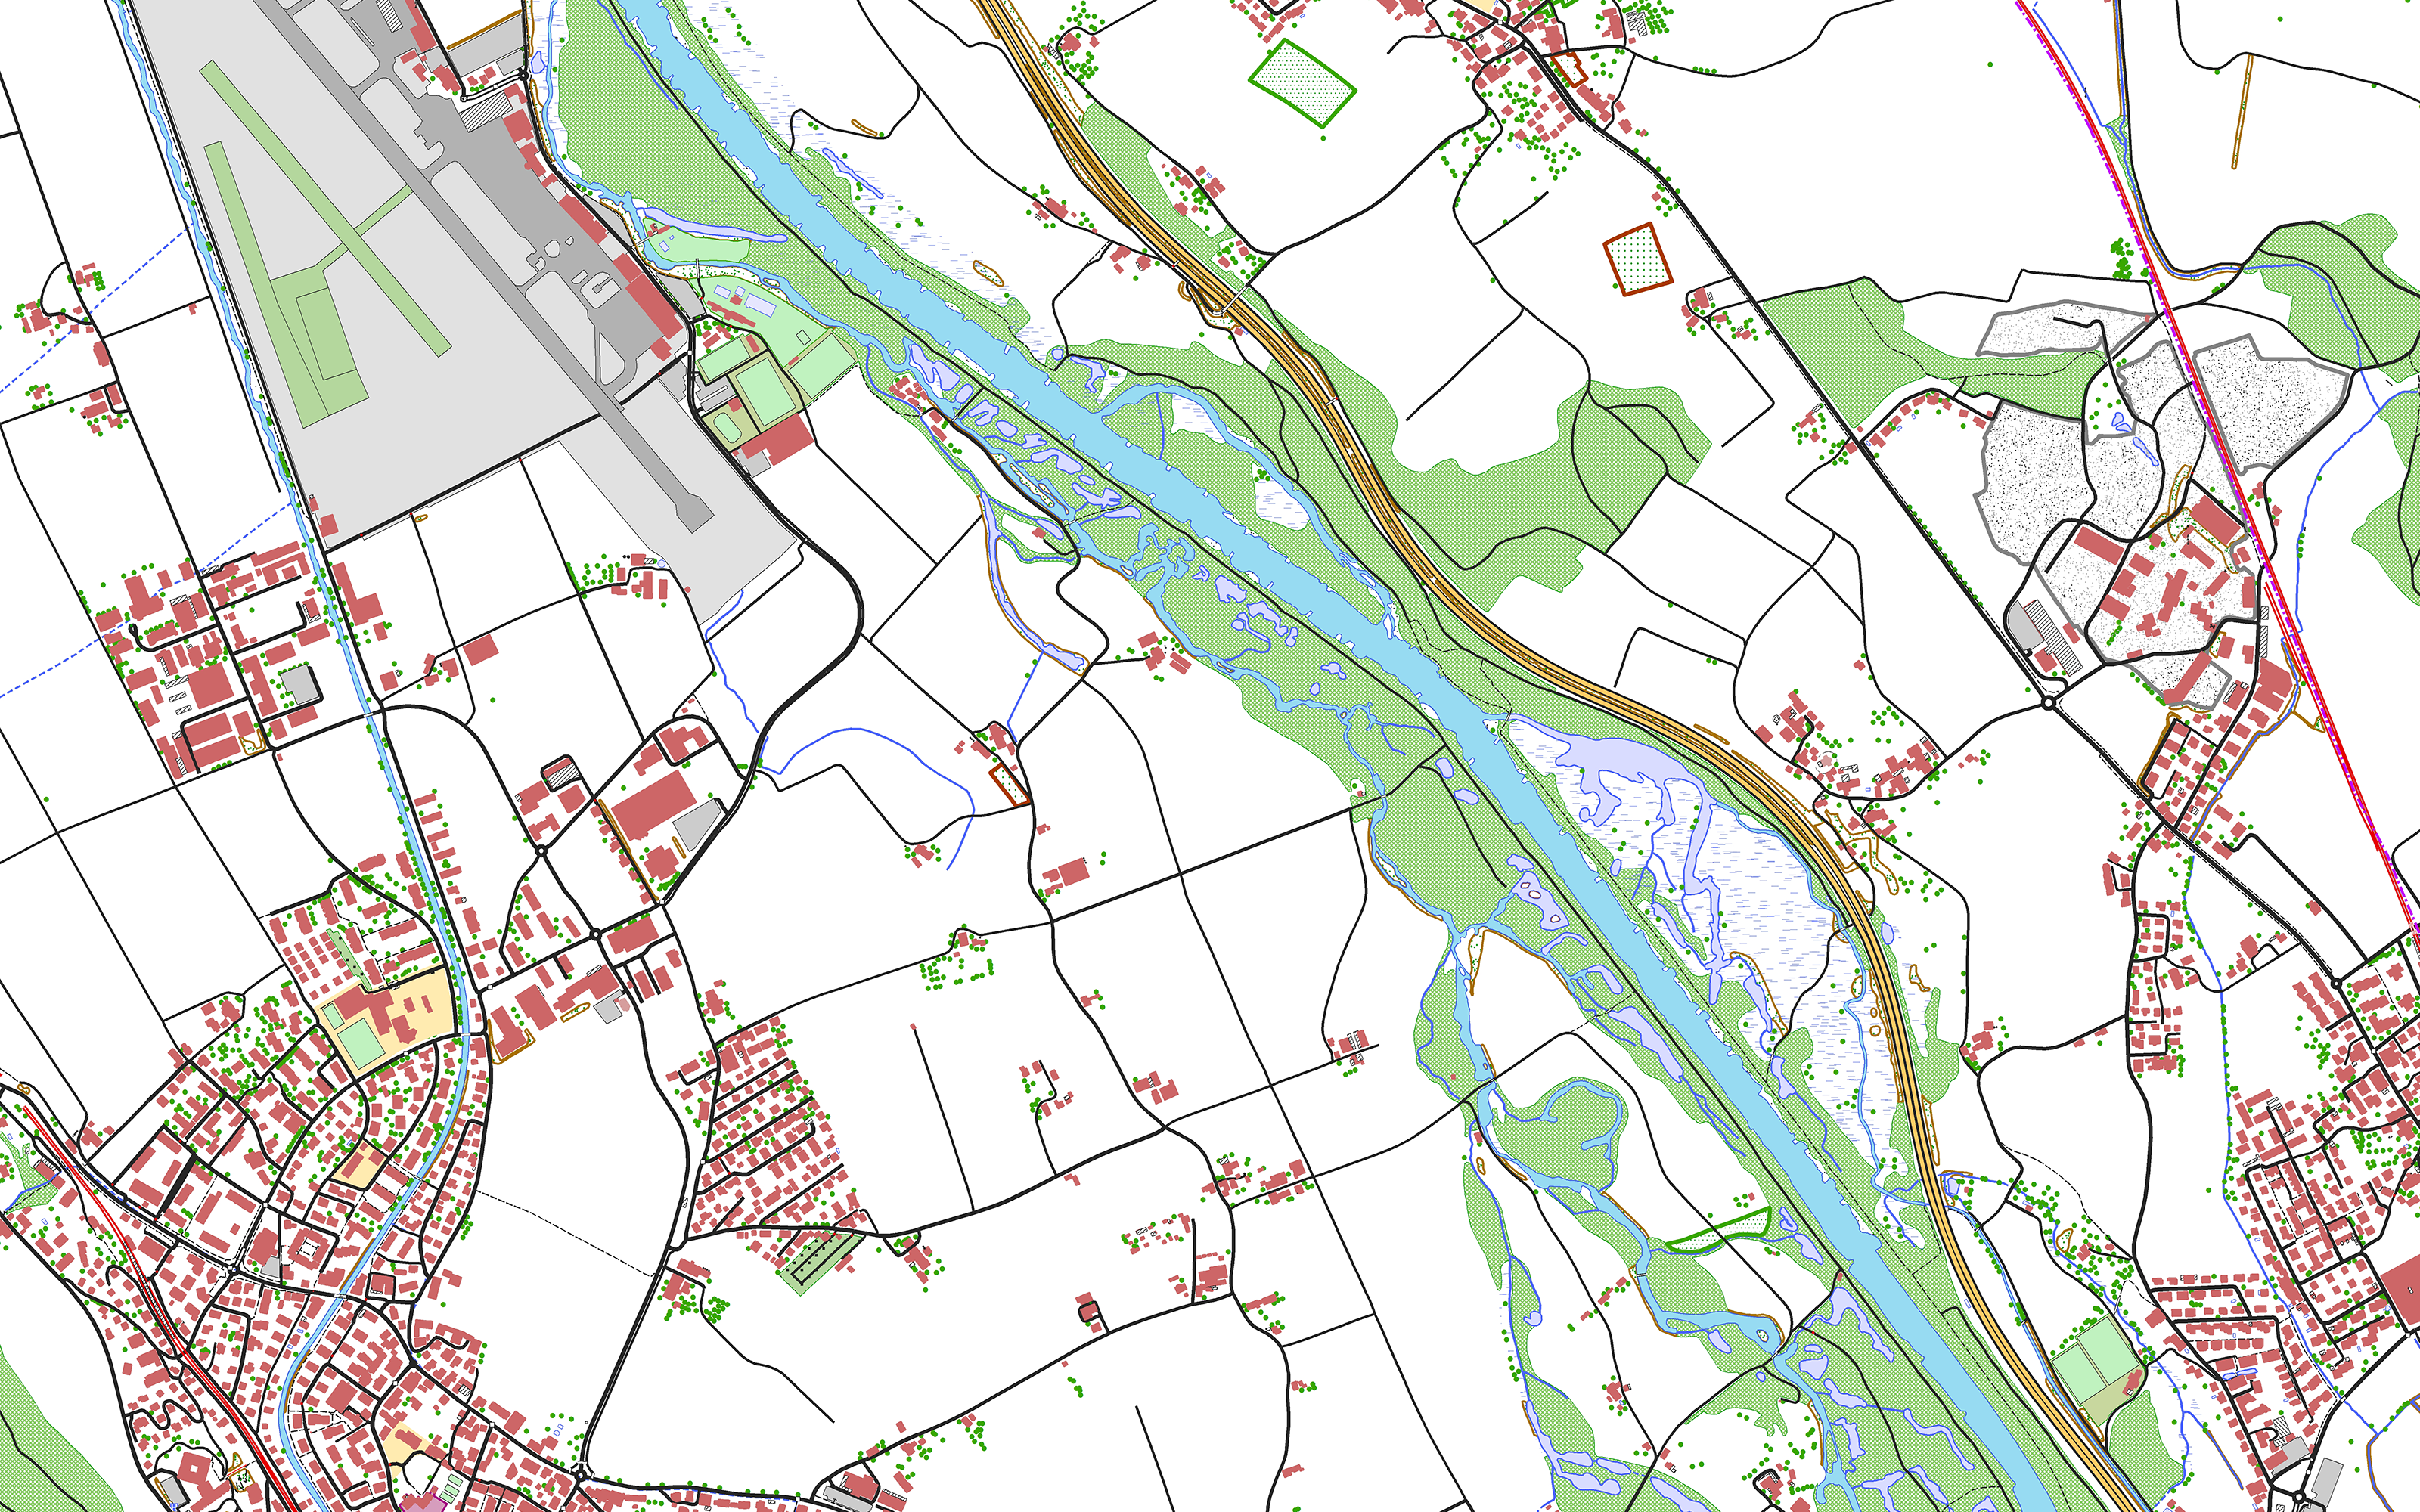 The image shows the swissTLM3D landscape model in the Belp - Rubigen - Allmendingen b. Bern region